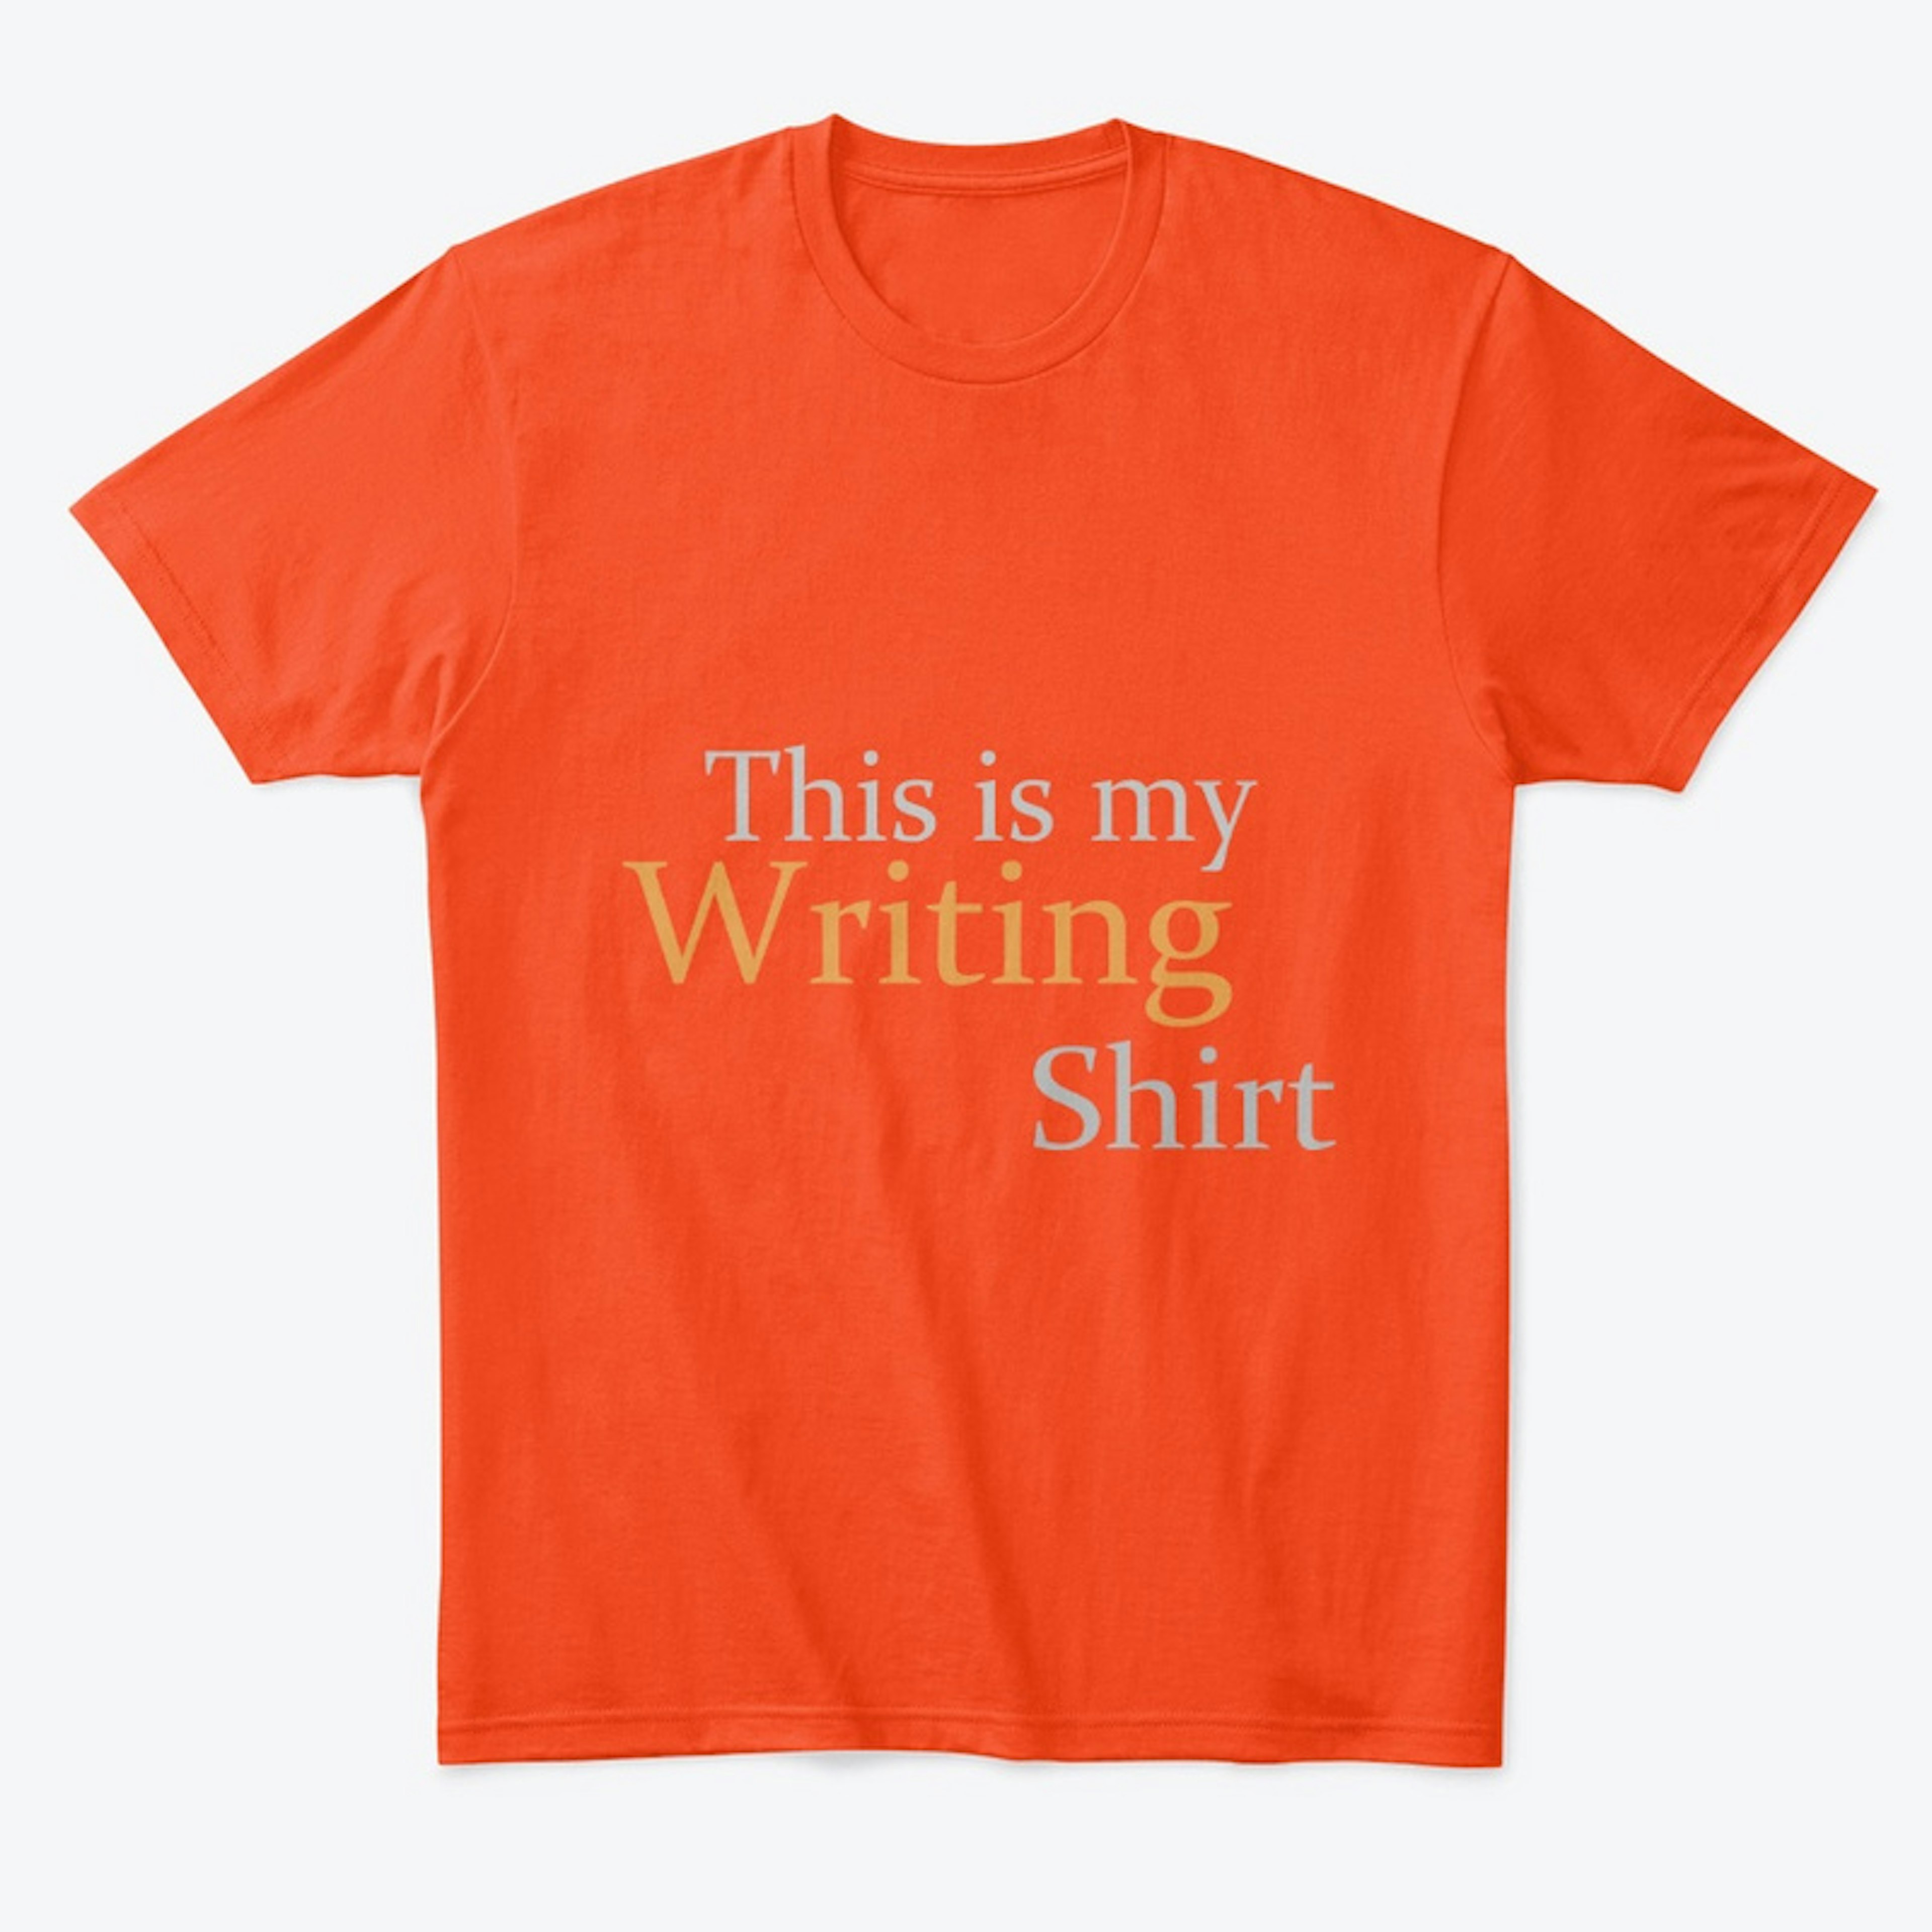 My Writing Shirt